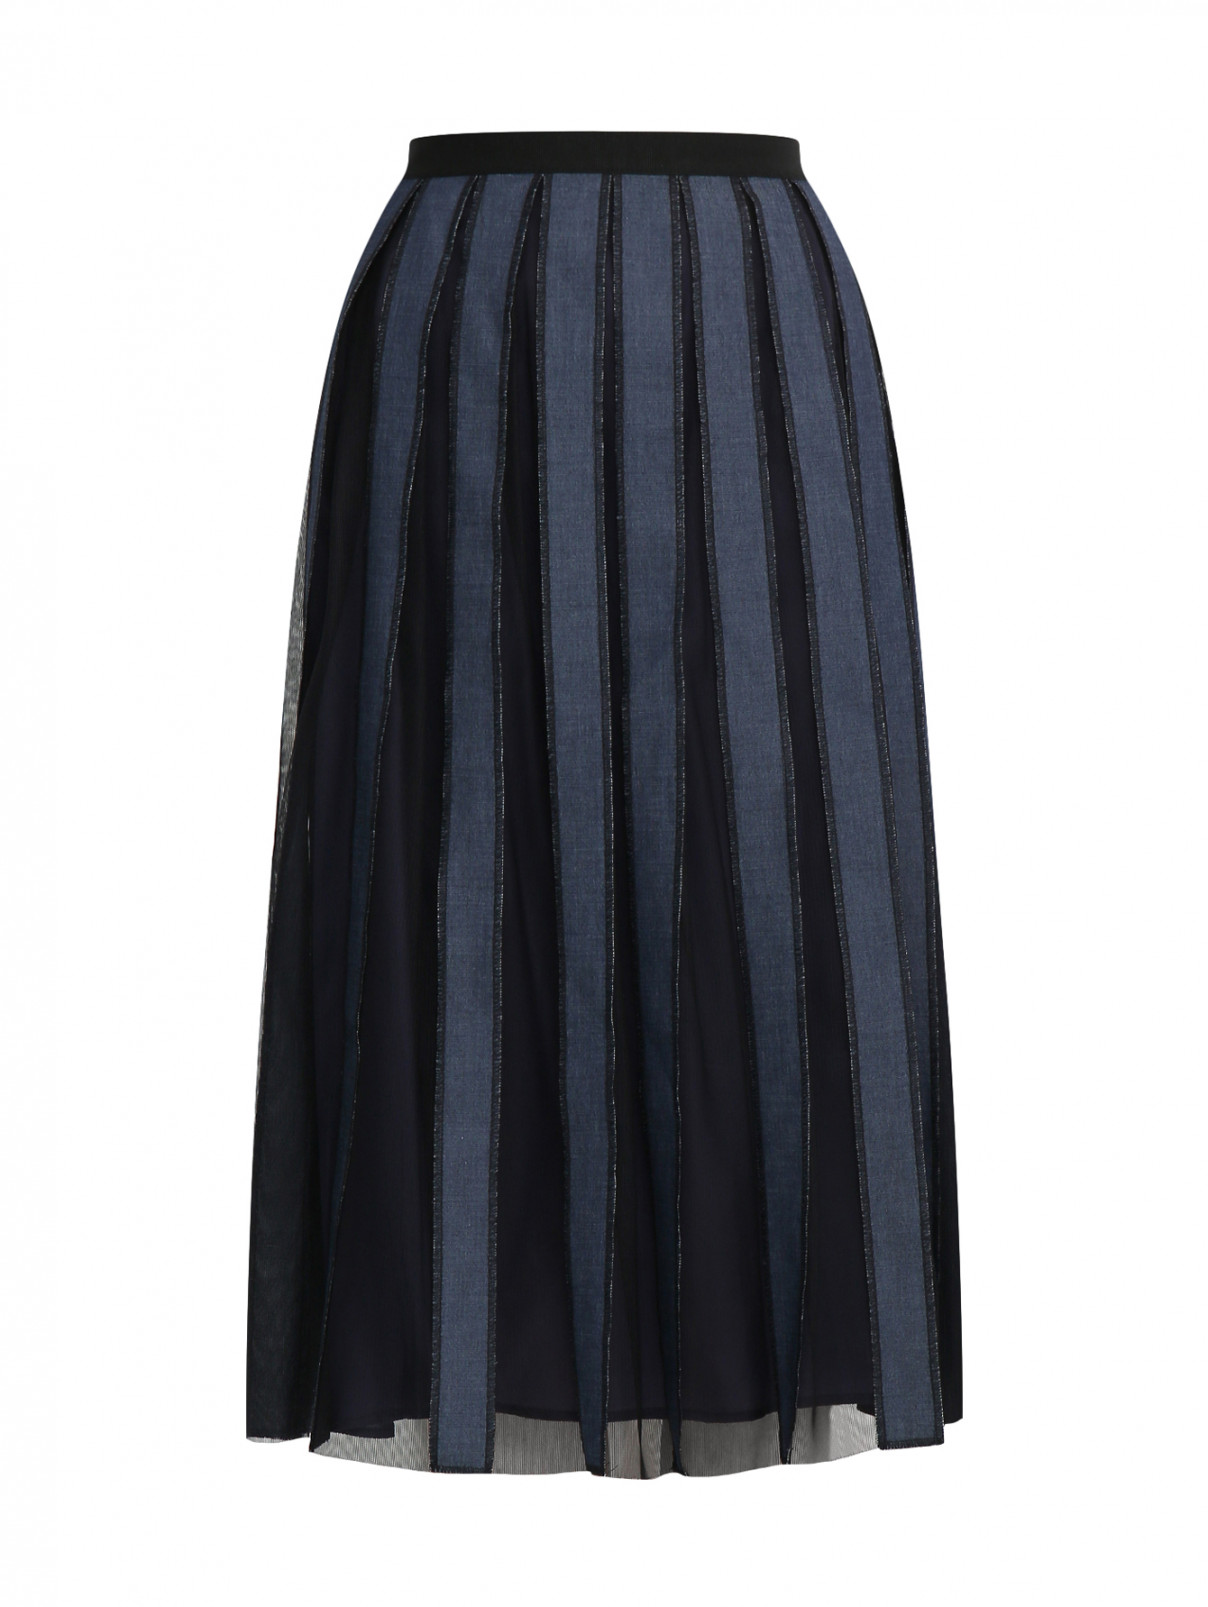 Юбка в складку из комбинированной ткани Antonio Marras  –  Общий вид  – Цвет:  Синий